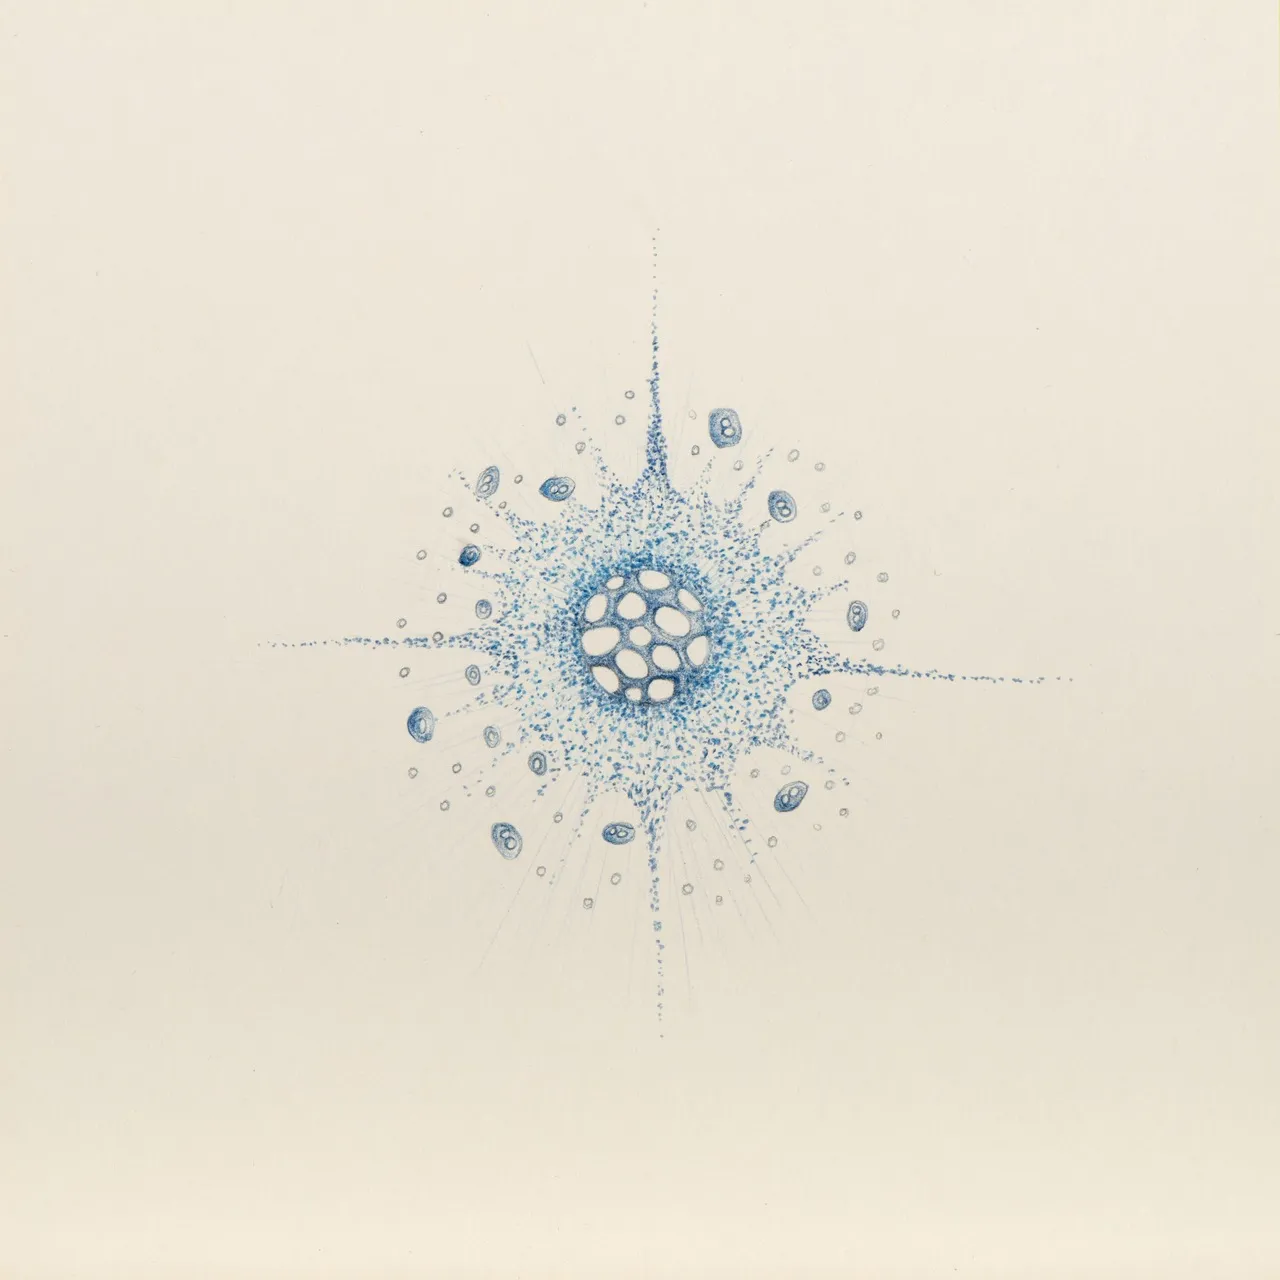 Diatomea blau 03, 2017, Buntstiftzeichnung, 20 x 20 cm